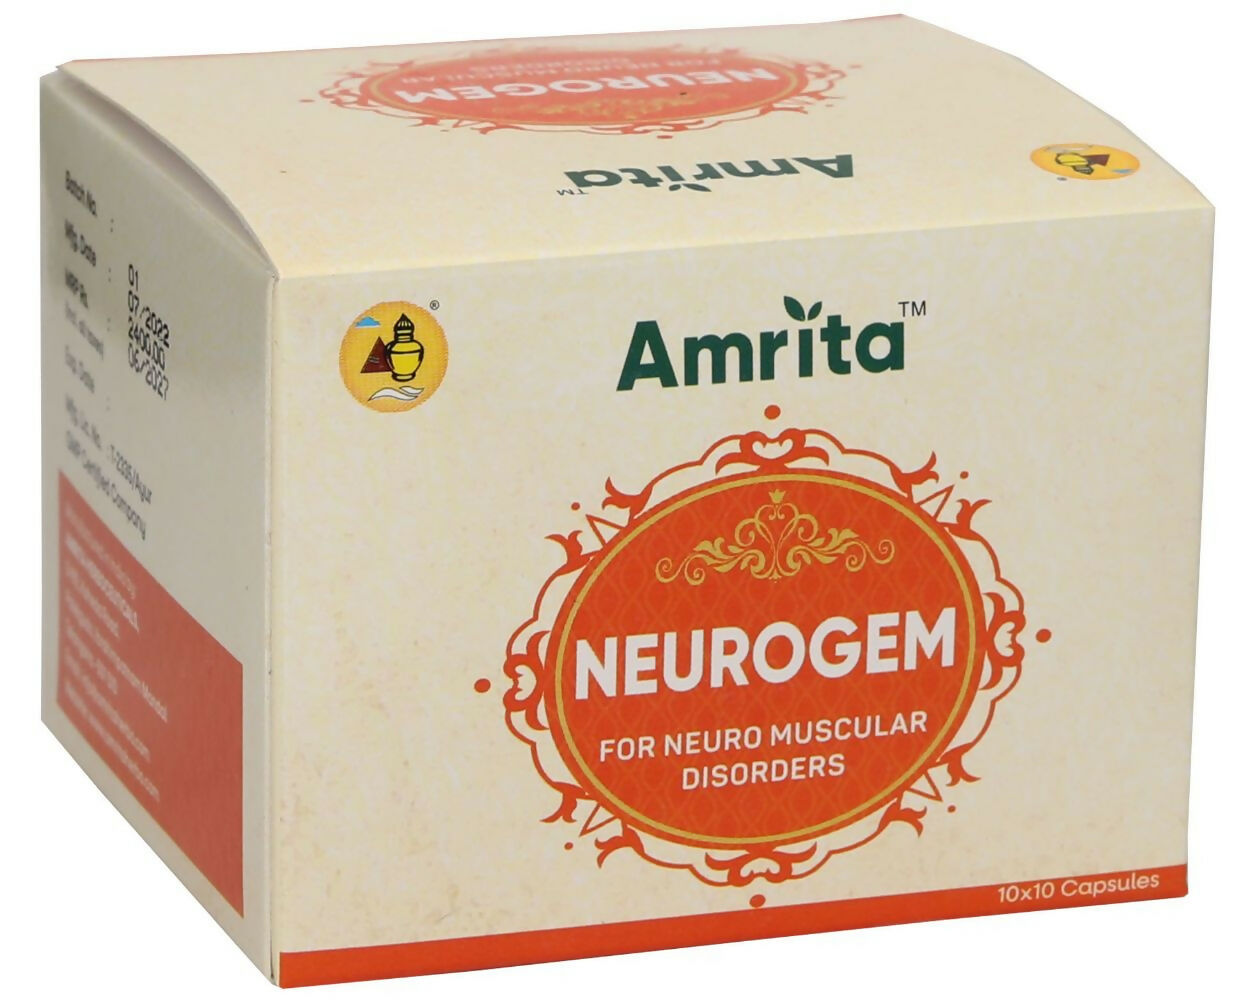 Amrita Neurogem Capsules - Distacart